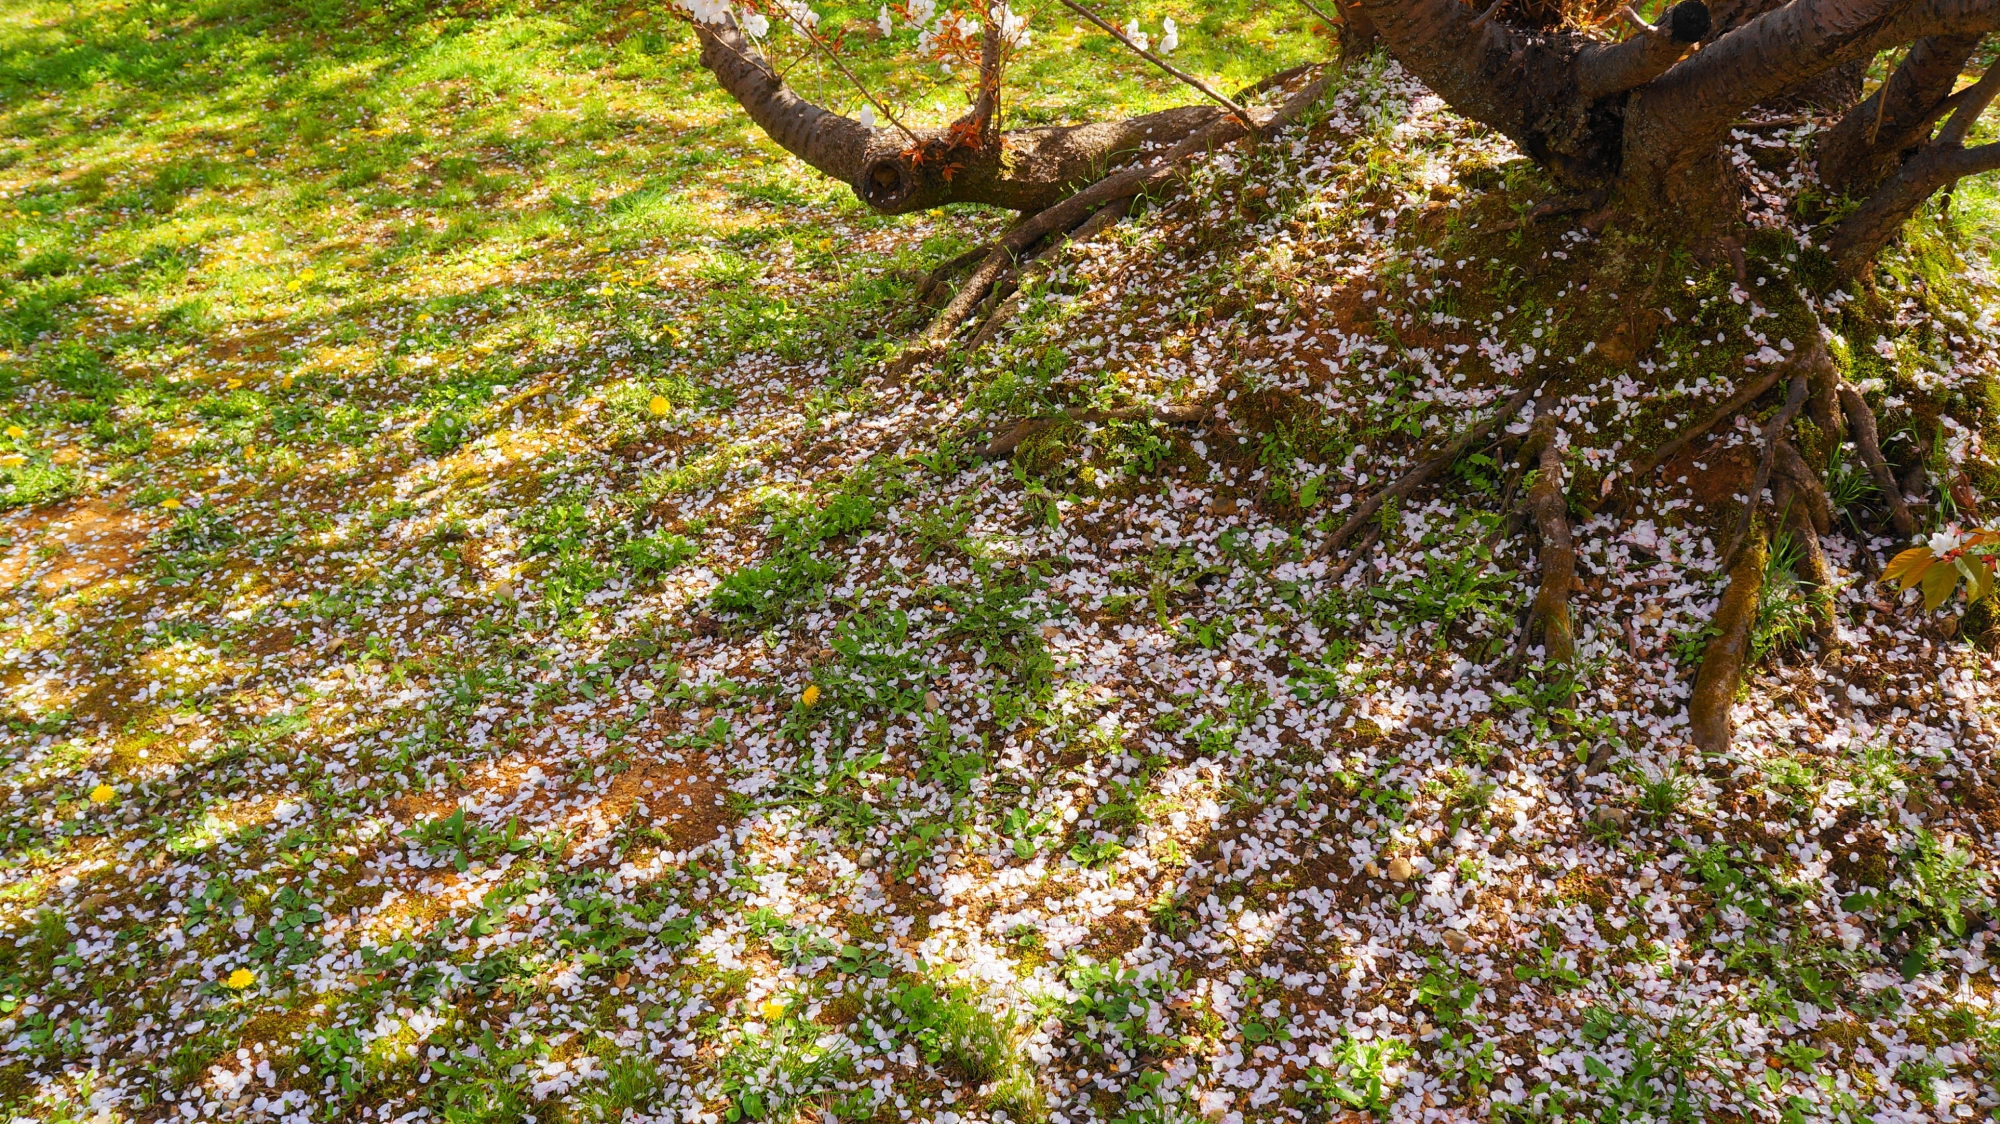 御室桜の綺麗な散った花びら